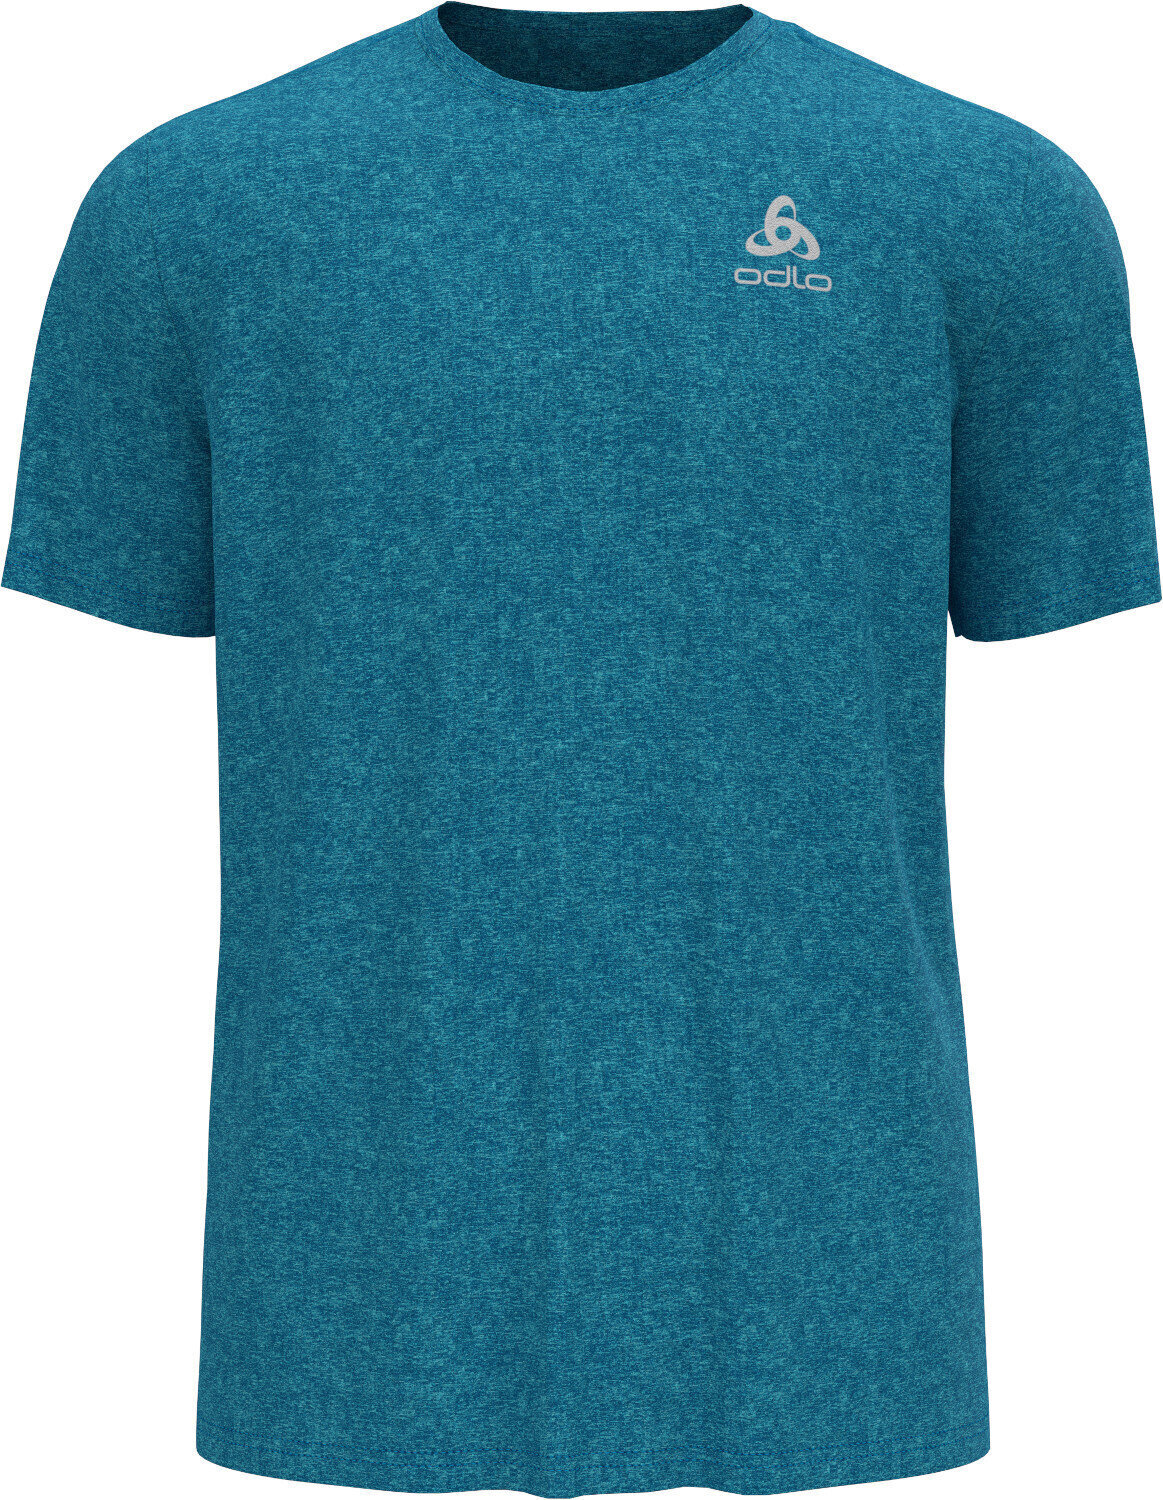 Ανδρικές Μπλούζες Τρεξίματος Kοντομάνικες Odlo Run Easy 365 T-Shirt Horizon Blue Melange S Ανδρικές Μπλούζες Τρεξίματος Kοντομάνικες